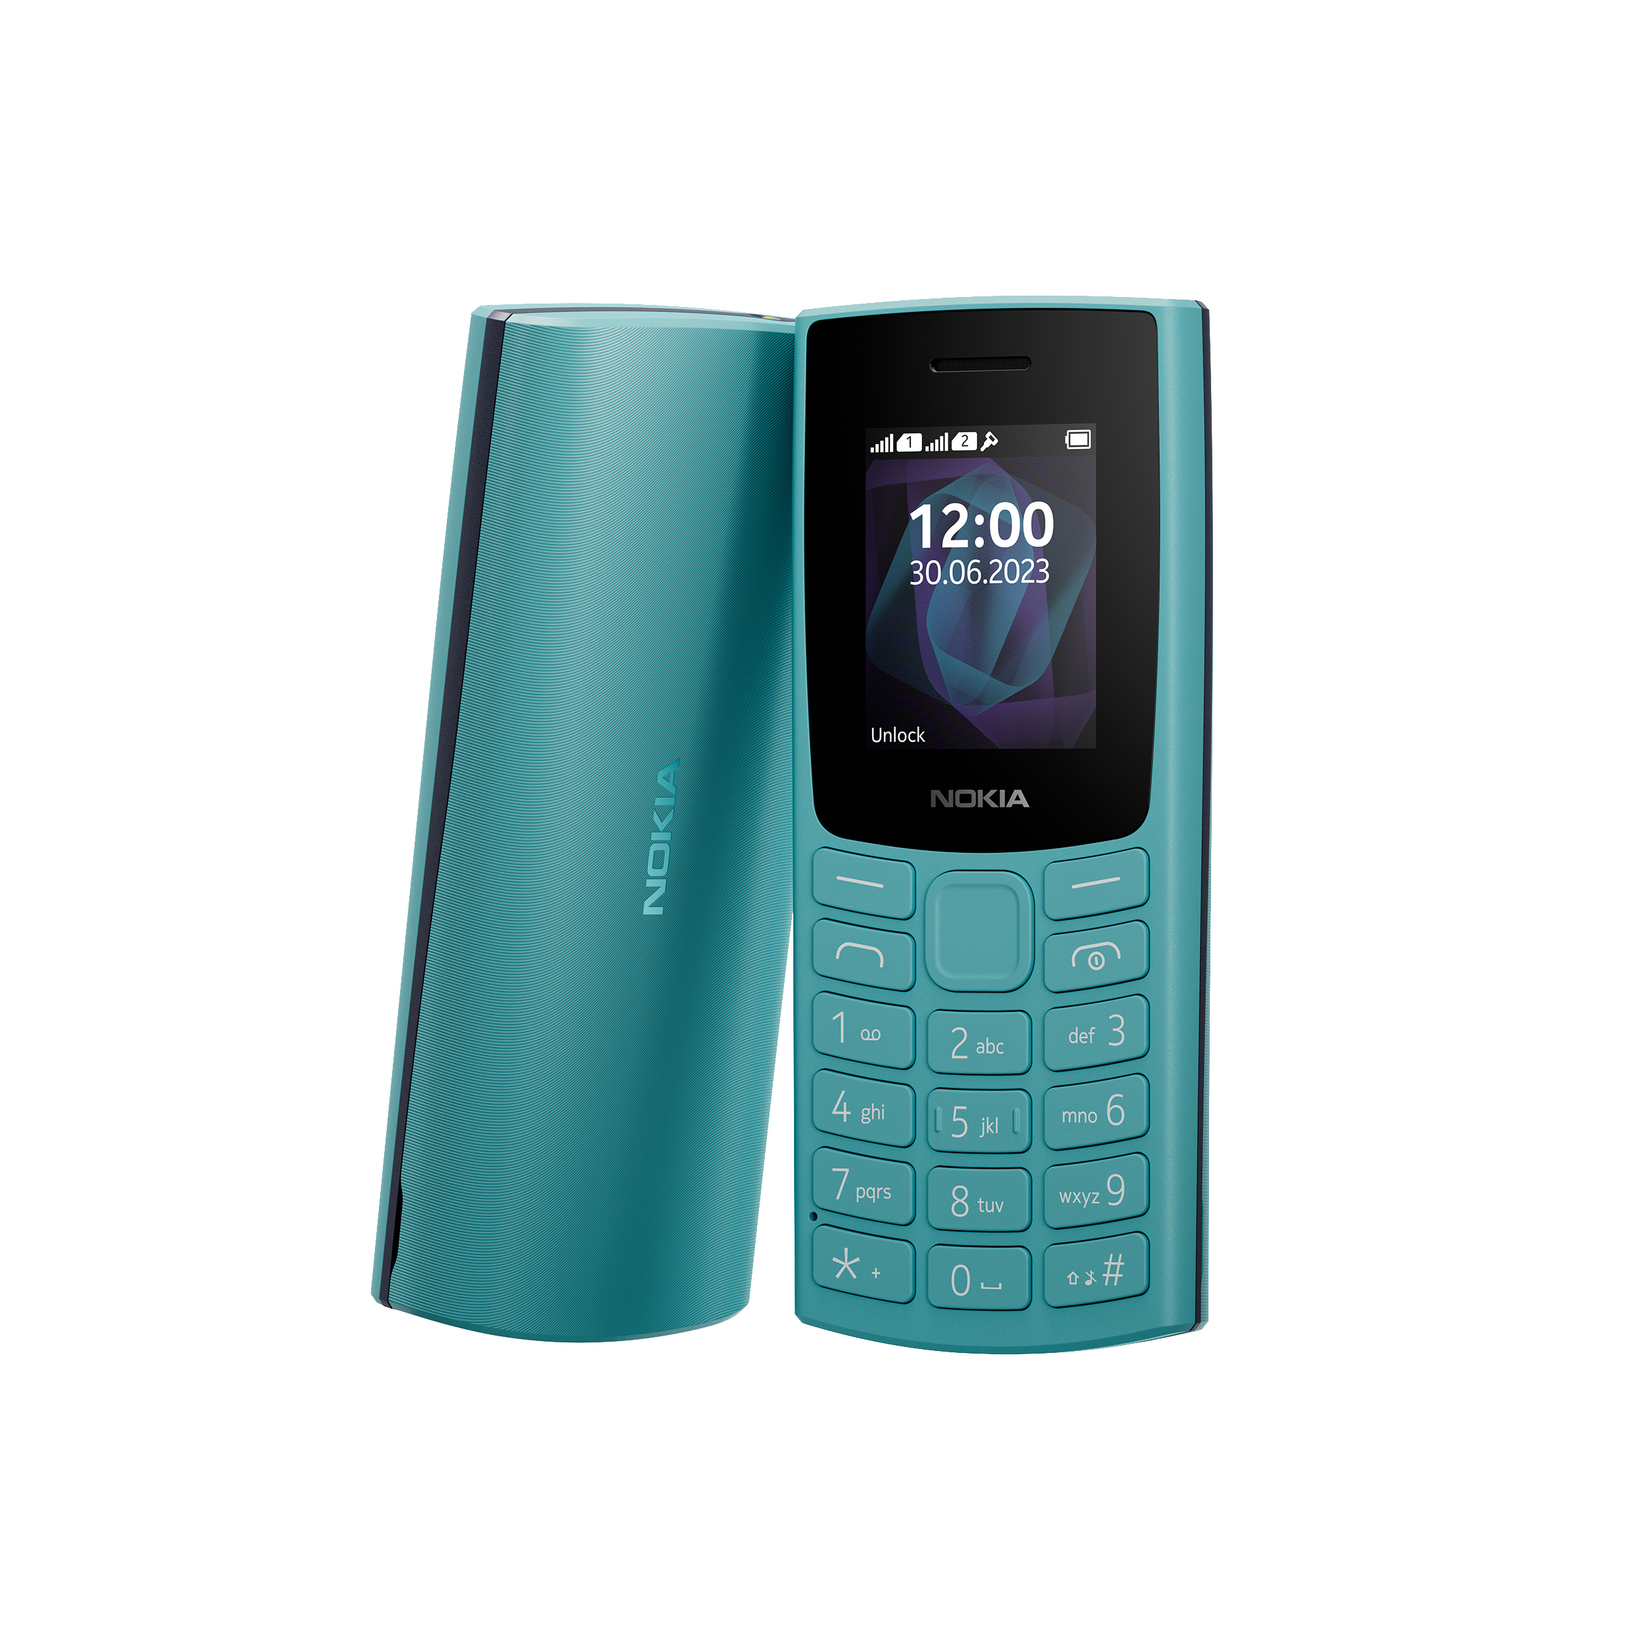 NOKIA 105 2023 Mobiltelefon, Cyan für 22,99€ in Media Markt